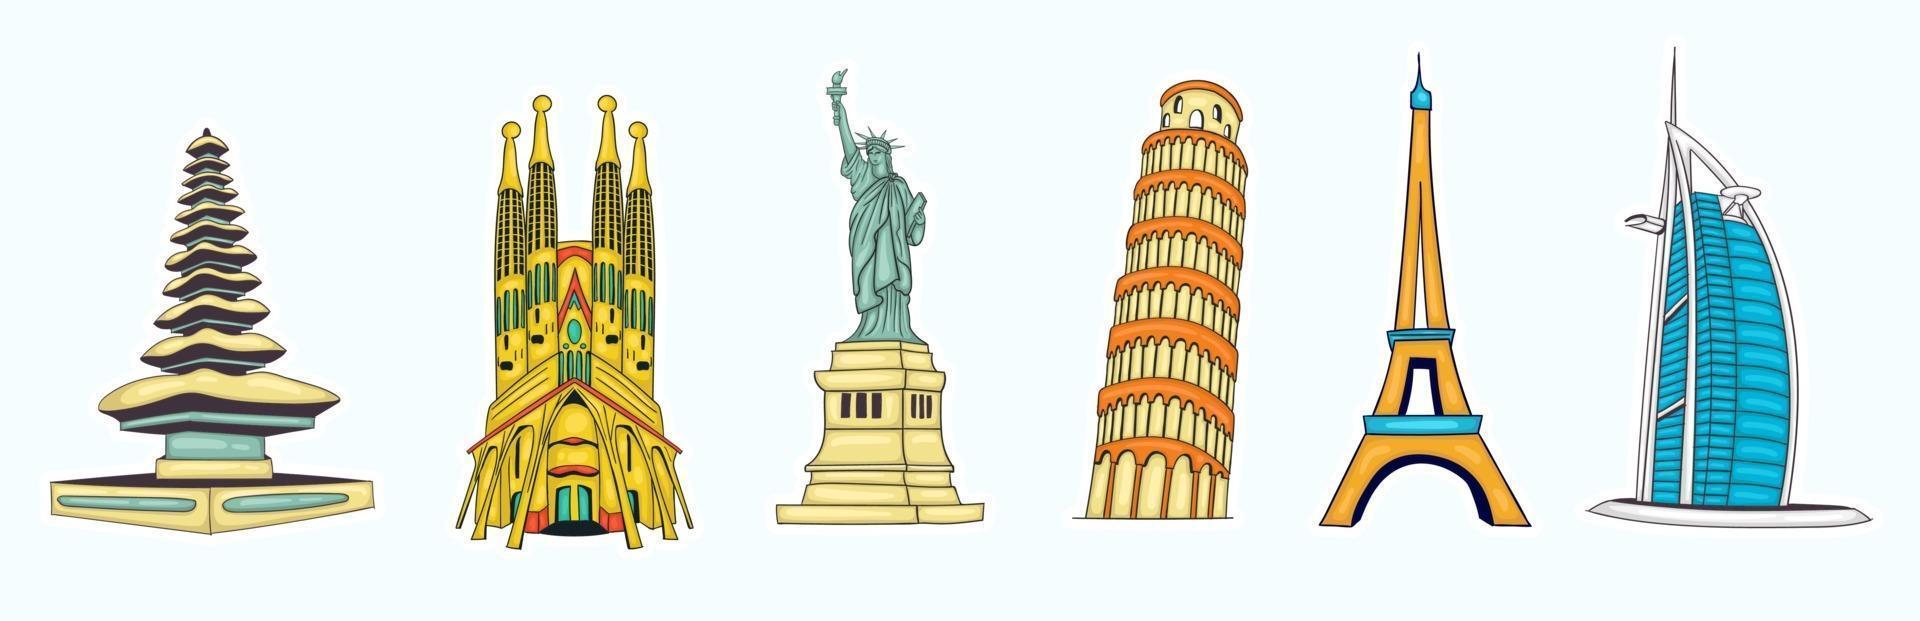 colección colorida de monumentos del mundo dibujados a mano vector